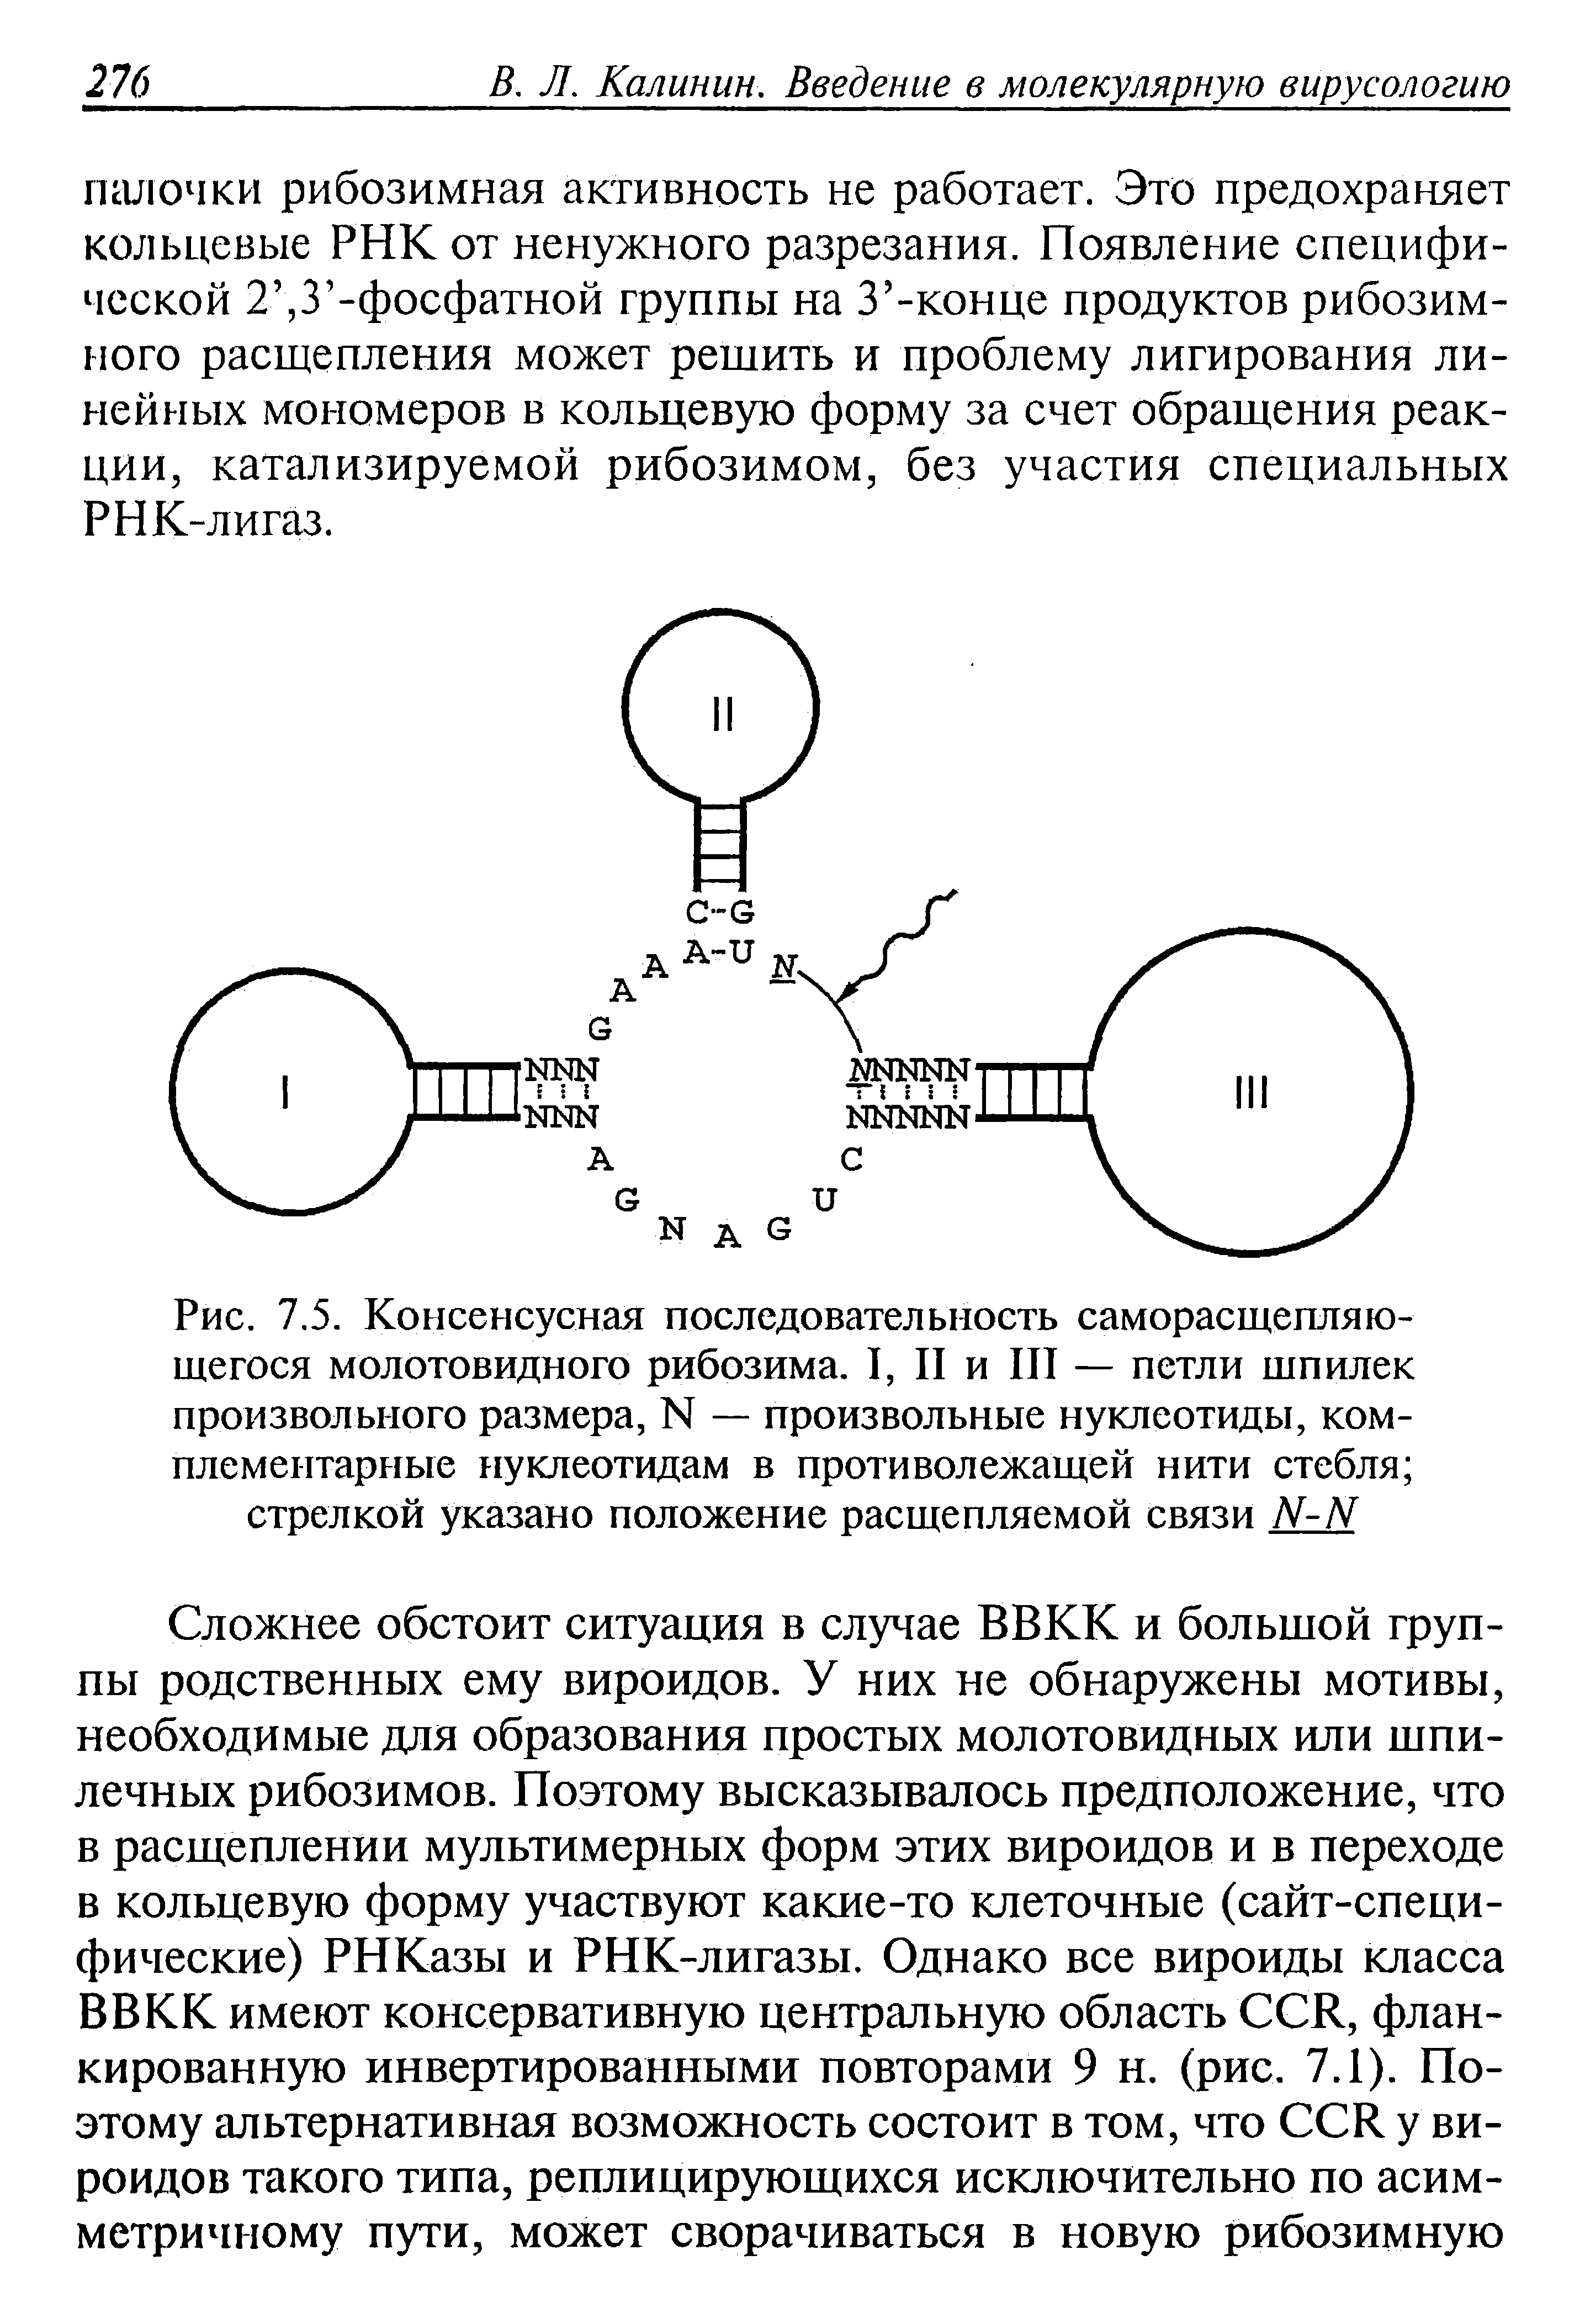 Рис. 7.5. Консенсусная последовательность саморасщепляю-щегося молотовидного рибозима. I, II и III — петли шпилек произвольного размера, N — произвольные нуклеотиды, комплементарные нуклеотидам в противолежащей нити стебля стрелкой указано положение расщепляемой связи N-N...